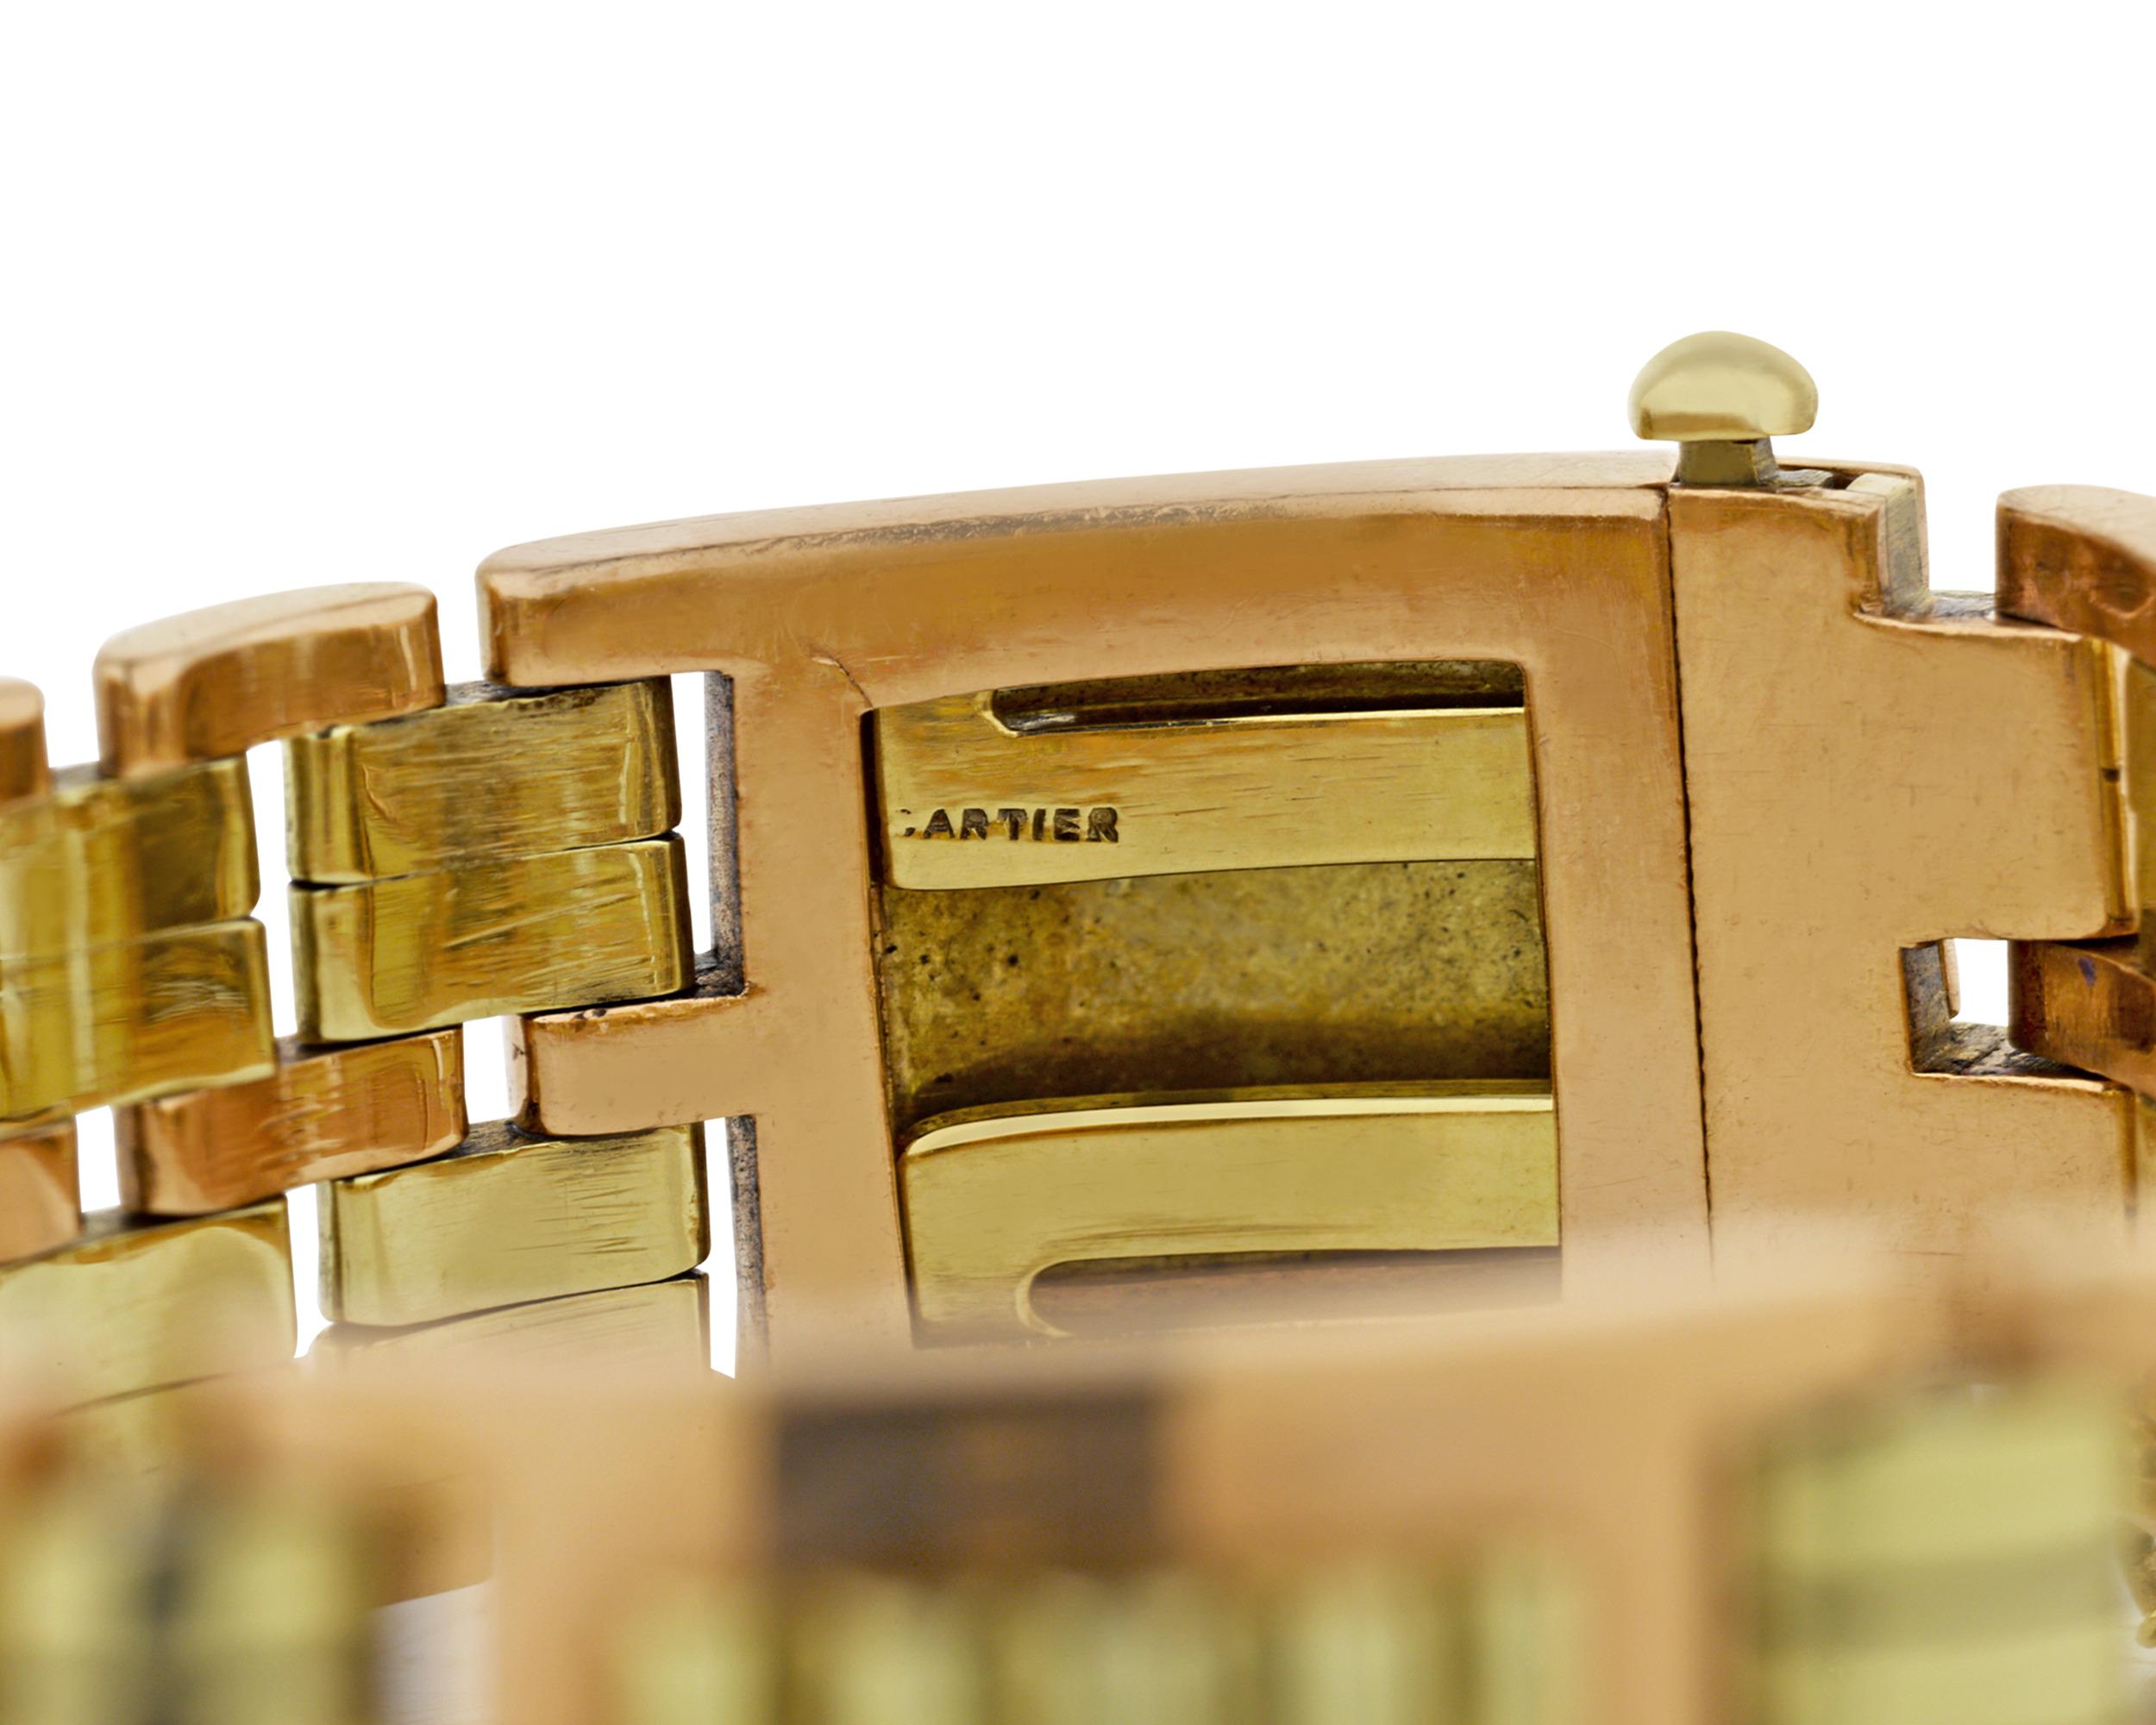 Dieses fabelhafte Armband aus 14 Karat Gold von Cartier ist ein klassisches Beispiel für den tadellosen Geschmack des Unternehmens. Das zweifarbige Gliederdesign aus Gold ist ein Wunderwerk der Retro-Kunst und Handwerkskunst, das die Qualitäten